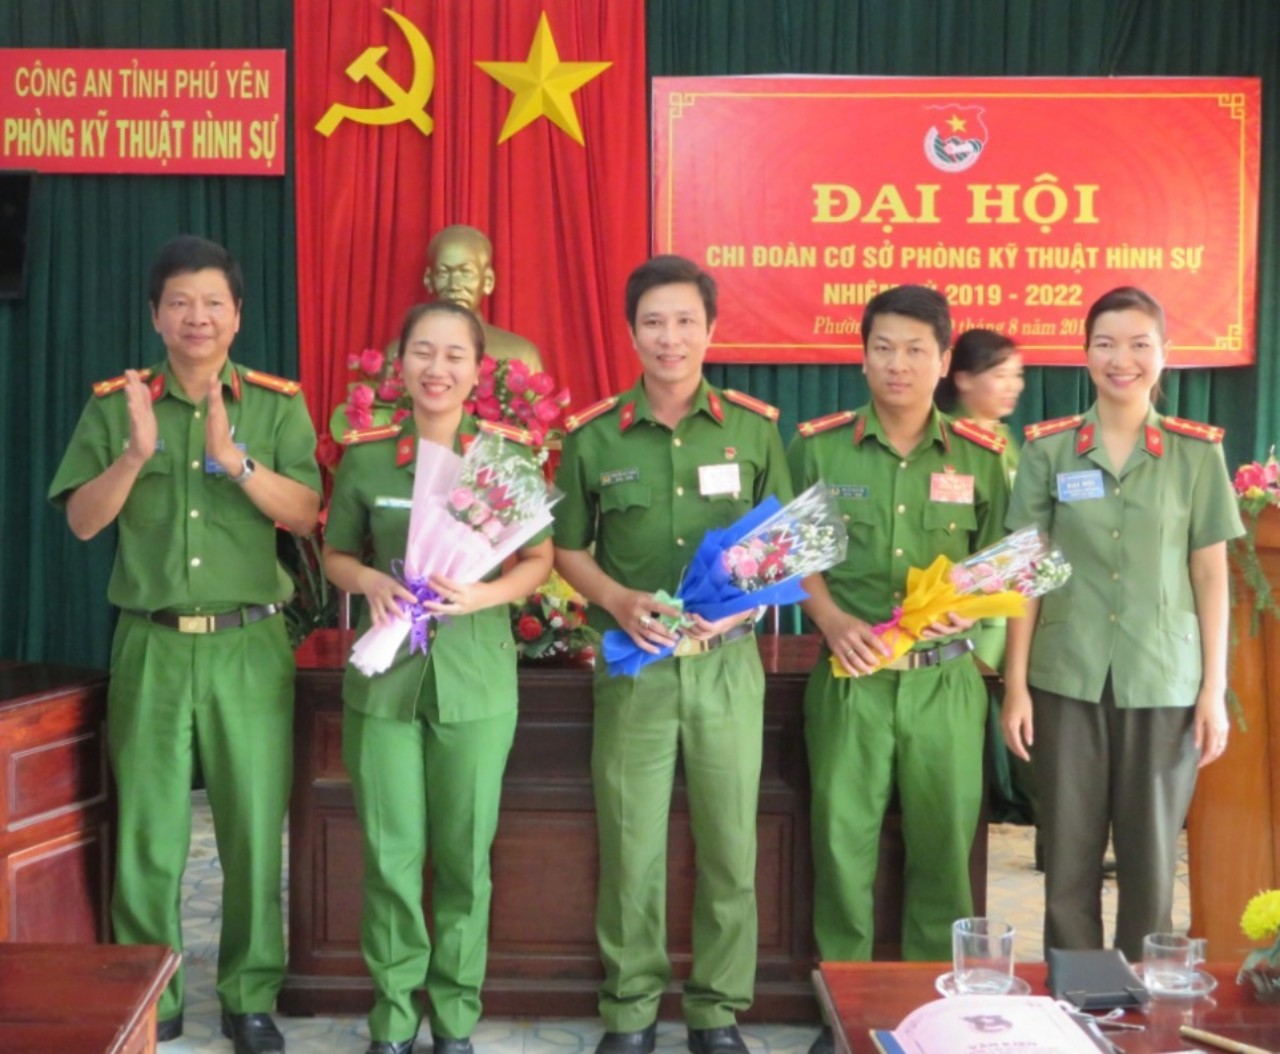 Đ/c Trung úy Nguyễn Duy Hùng (chính giữa) tại Đại hội Chi đoàn Phòng Kỹ thuật hình sự, nhiệm kỳ 2019-2022